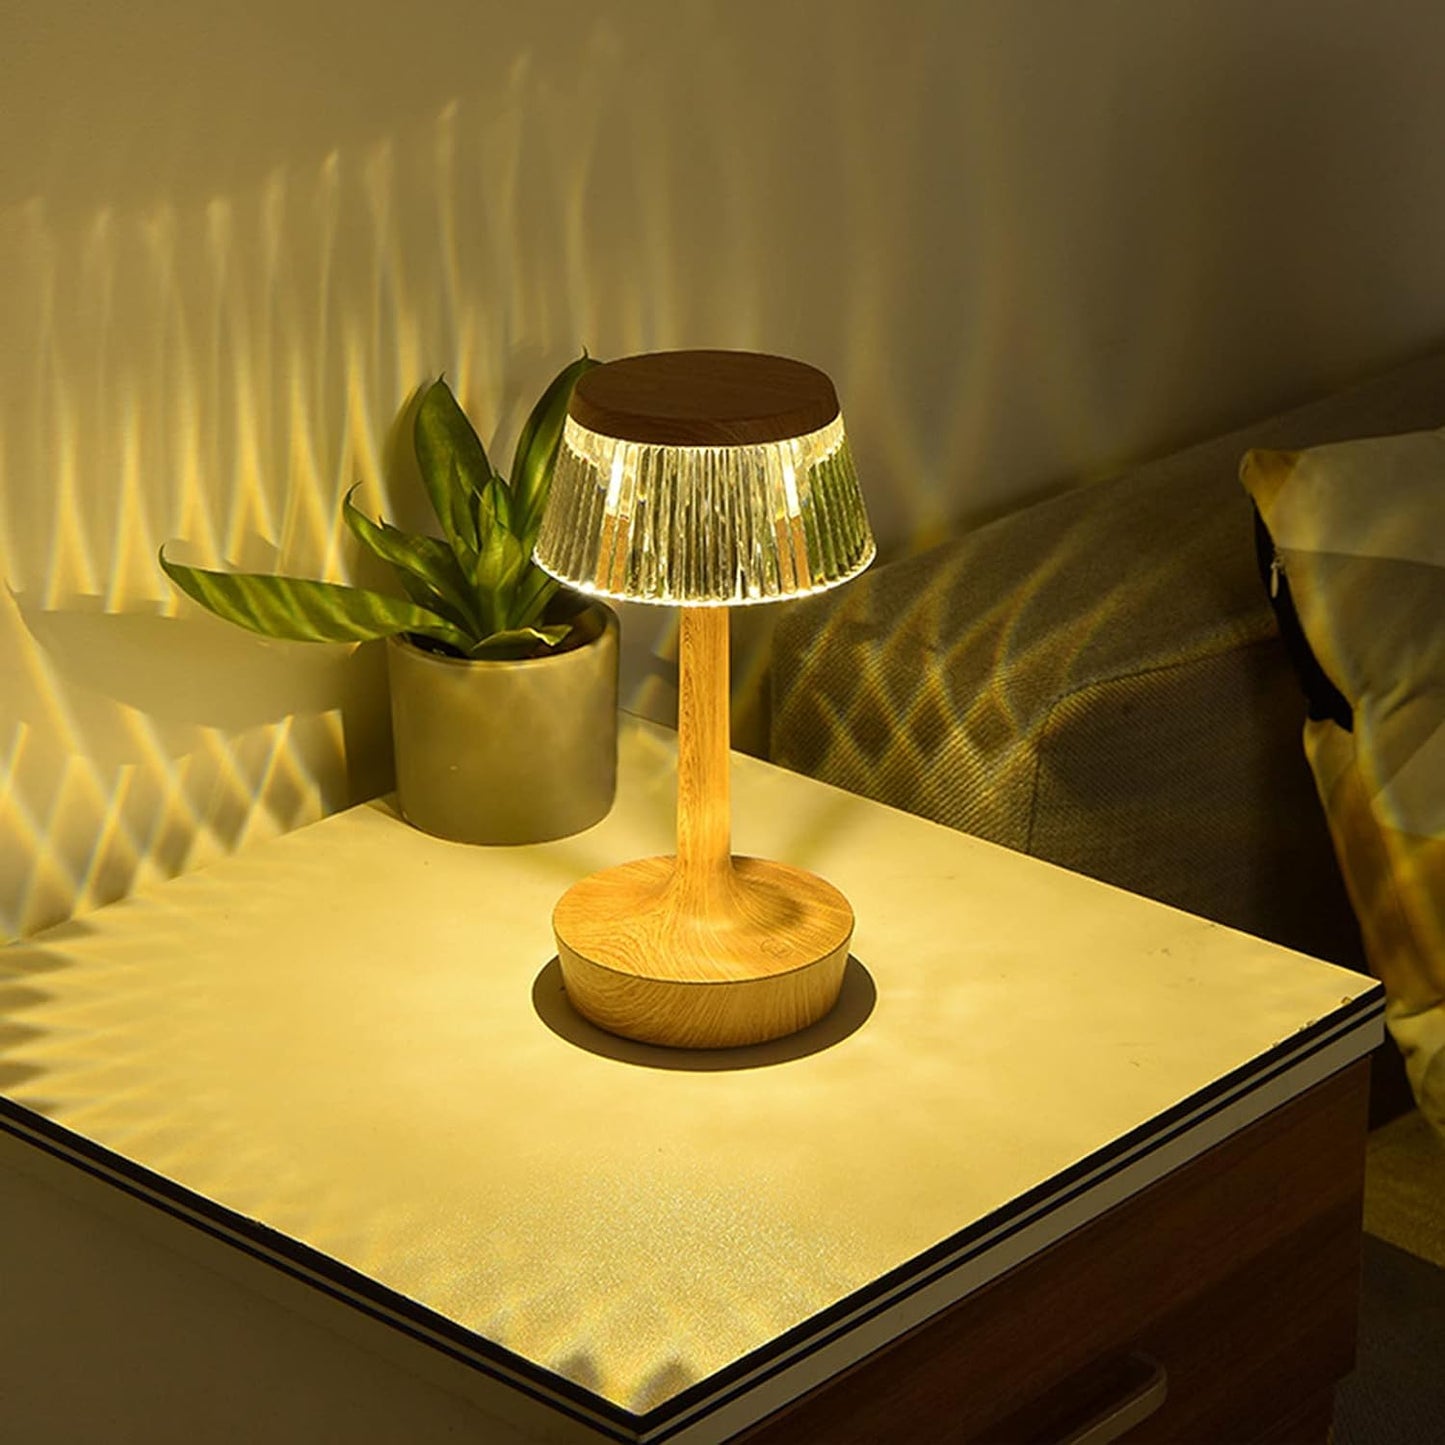 Hdc Mushroom Table Lamp Home Elegant Decorative Living Room Bedside Crystal Desk Lamp Hallway Lamp Living Room Cofe Bar for Bedroom - Champagne Gold